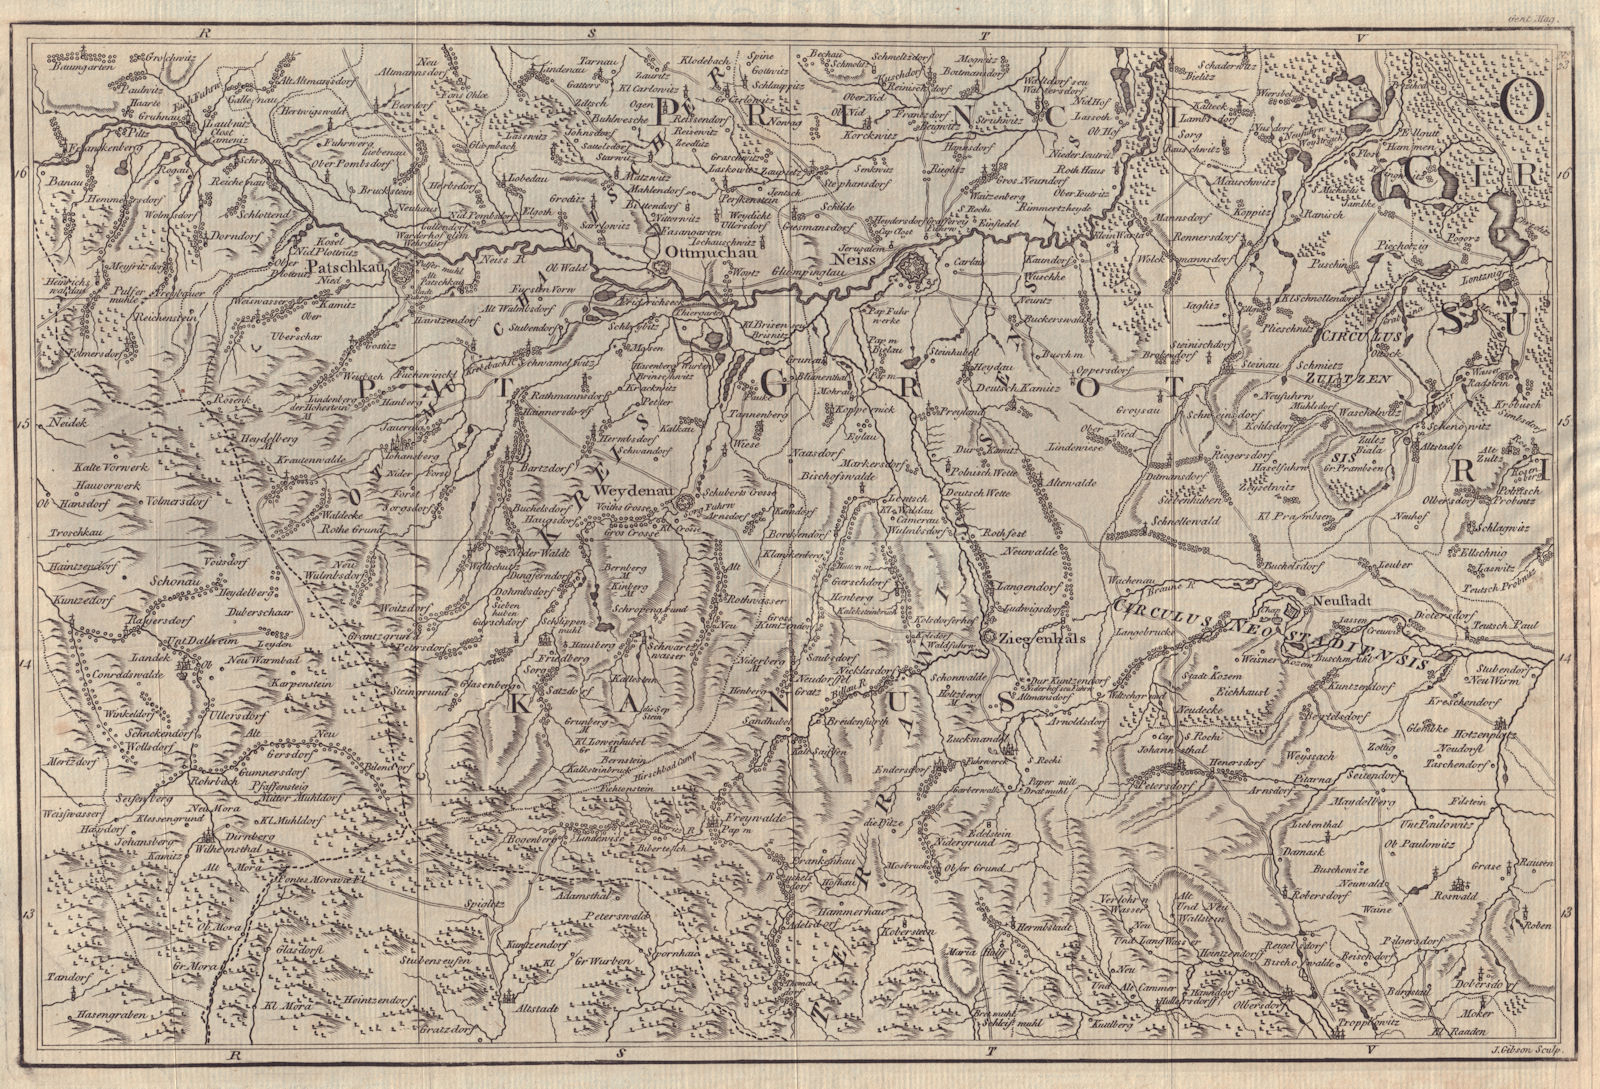 Silesia/Czechia. Paczkow Otmuchow Nysa Vidnava Prudnik. Poland. GIBSON 1762 map